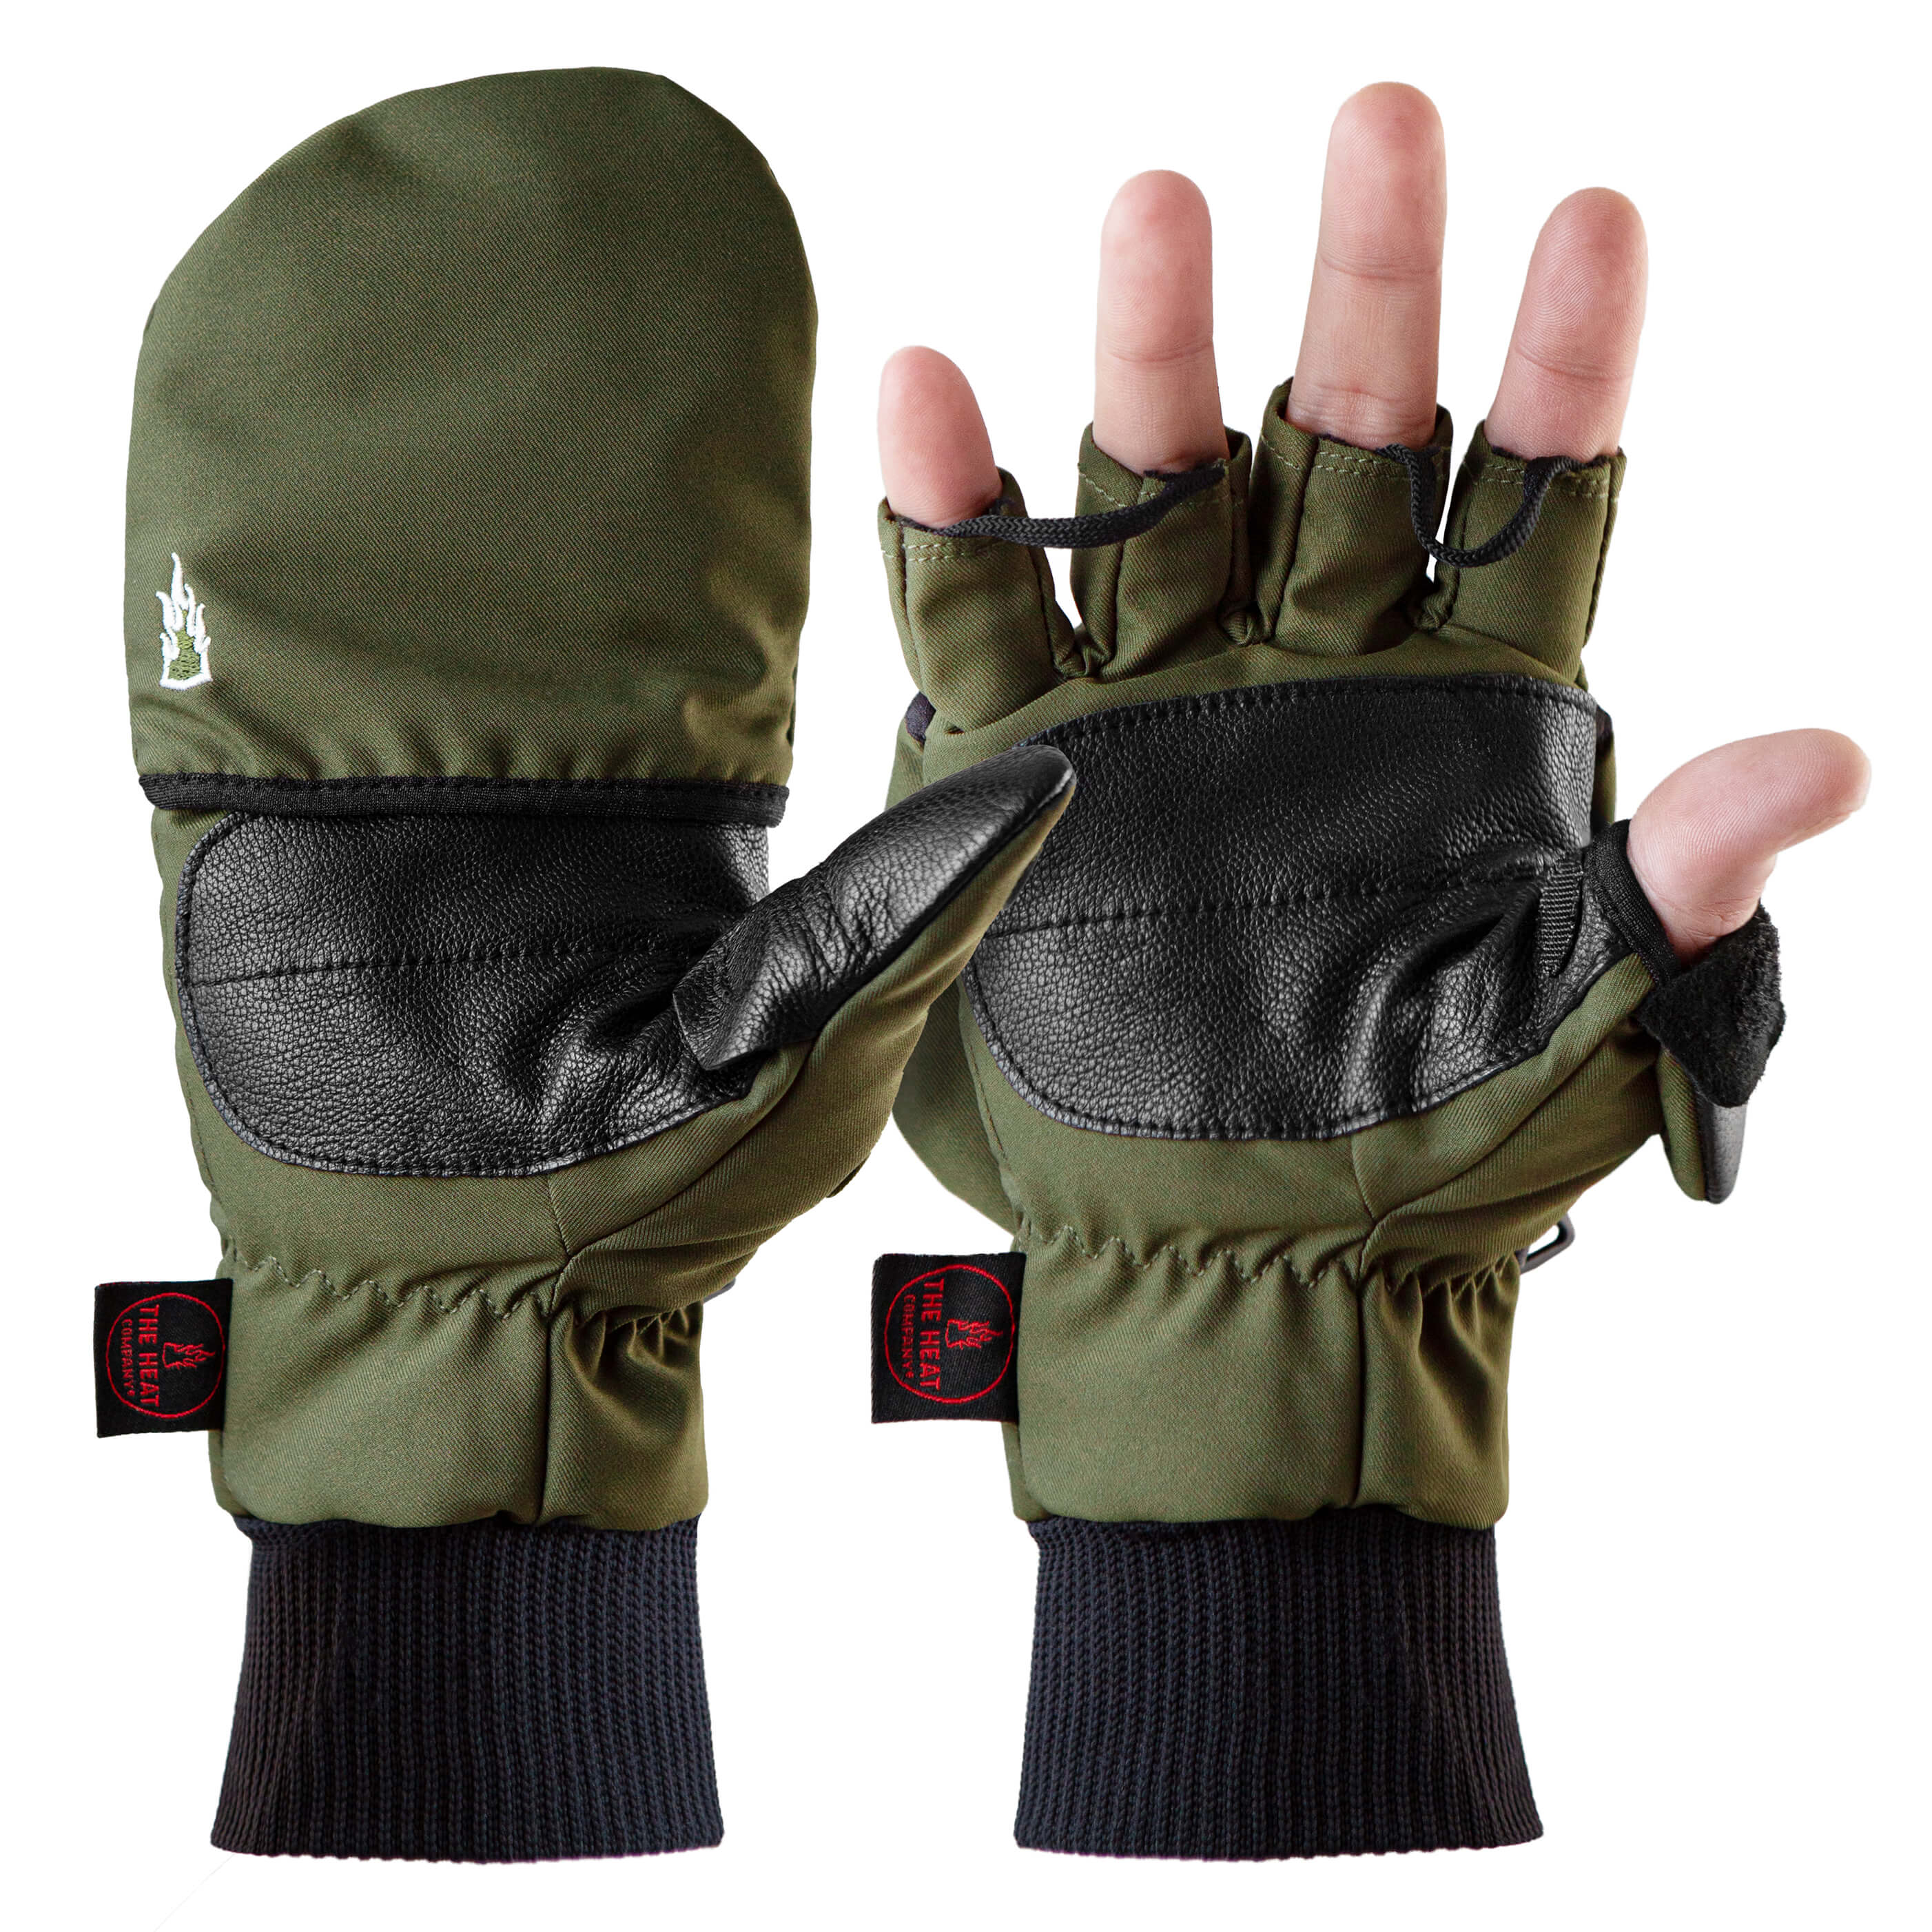 Warm Winter Fliptop Gloves Fingerless Pop Top Convertible Photography Mittens US